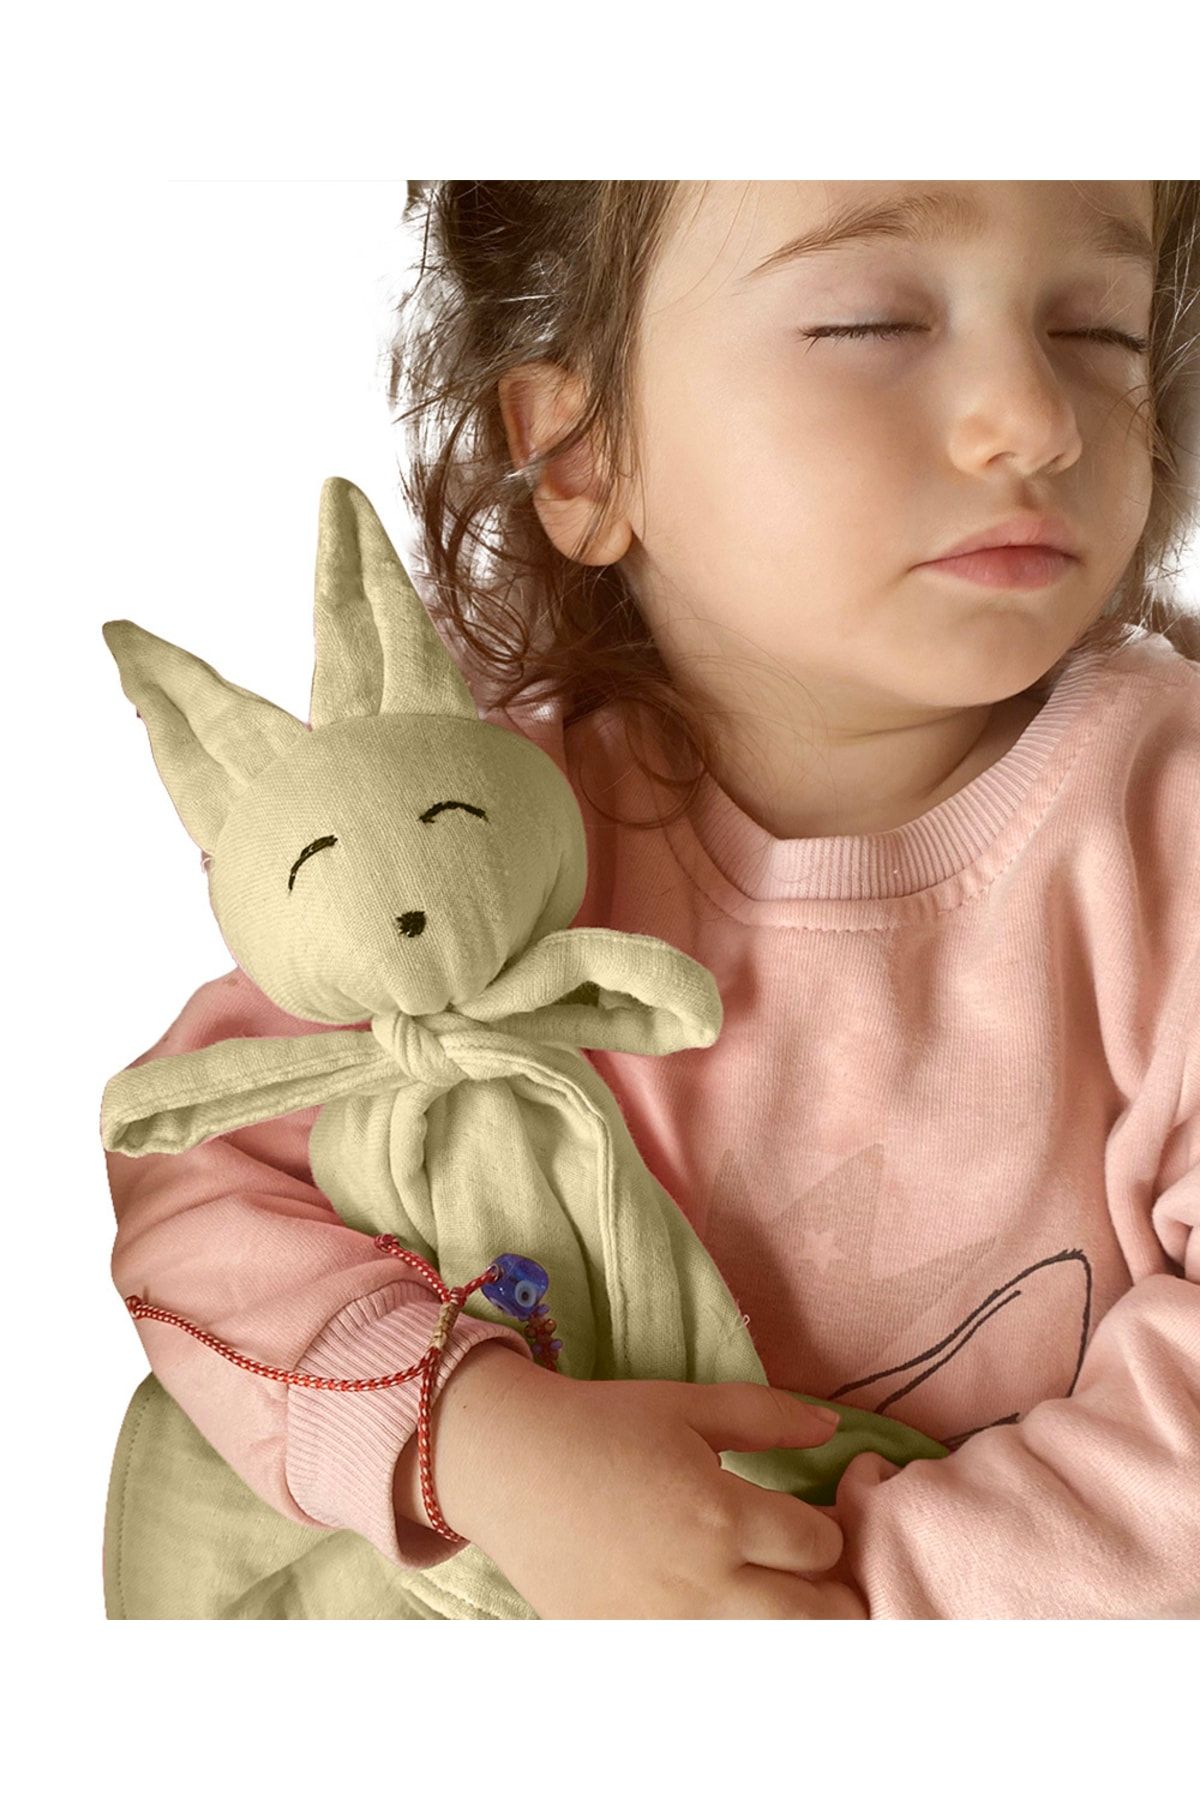 Joyous Mom Kids Müslin Bebek Uyku Arkadaşı 4 Katlı Tavşan Organik Oyuncak Uyku Arkadaşı Desteksiz Uyku Arkadaşı